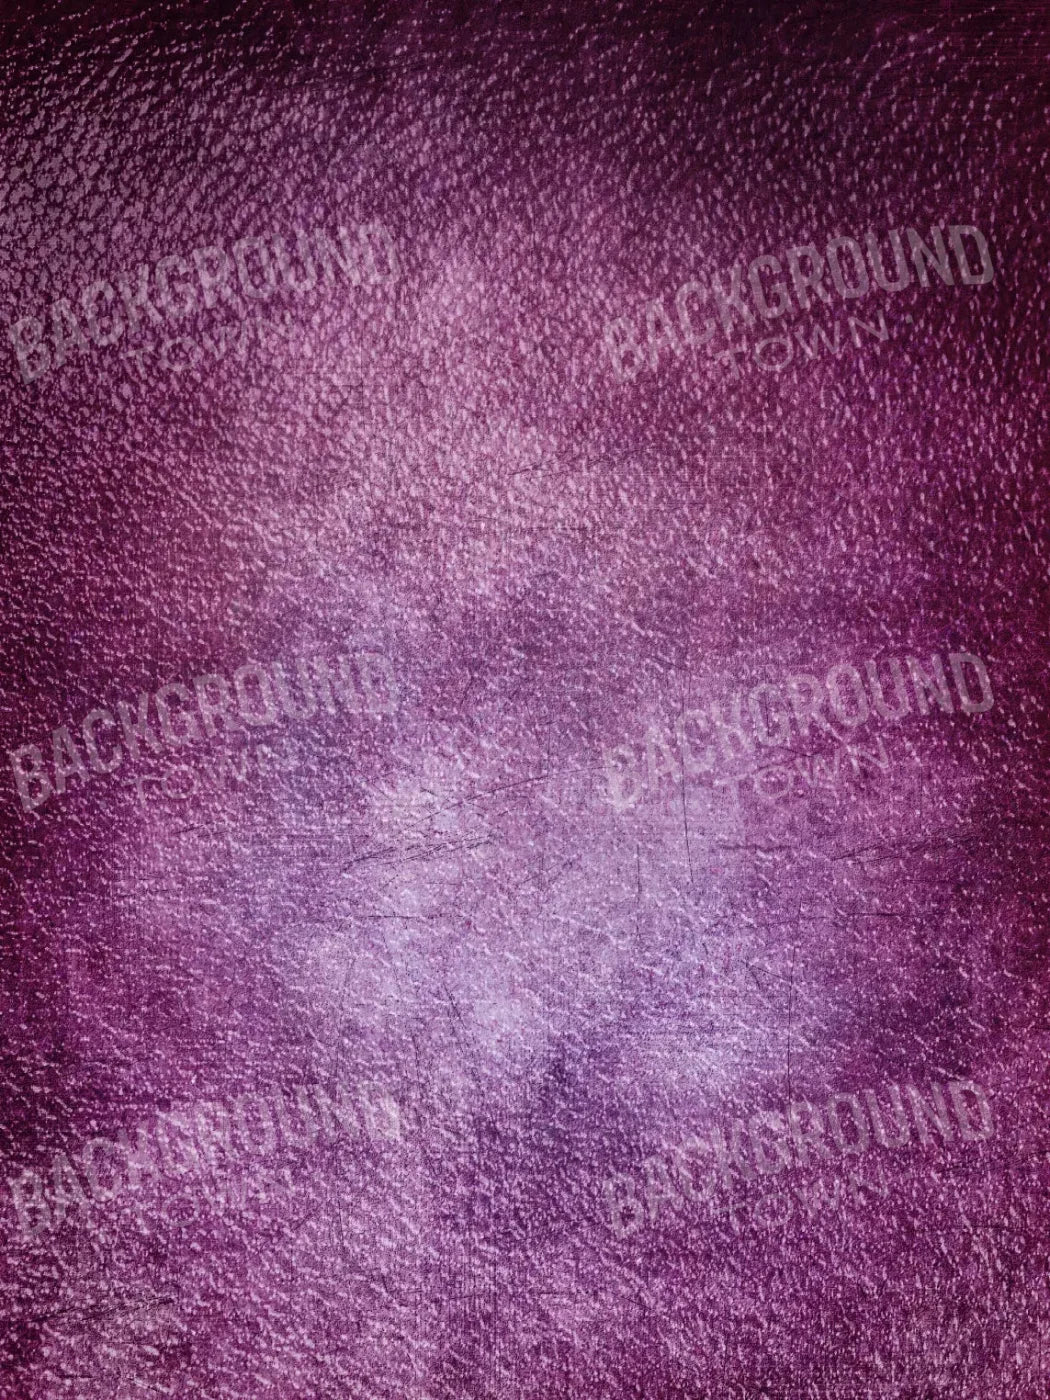 Amethyst 5X7 Ultracloth ( 60 X 84 Inch ) Backdrop